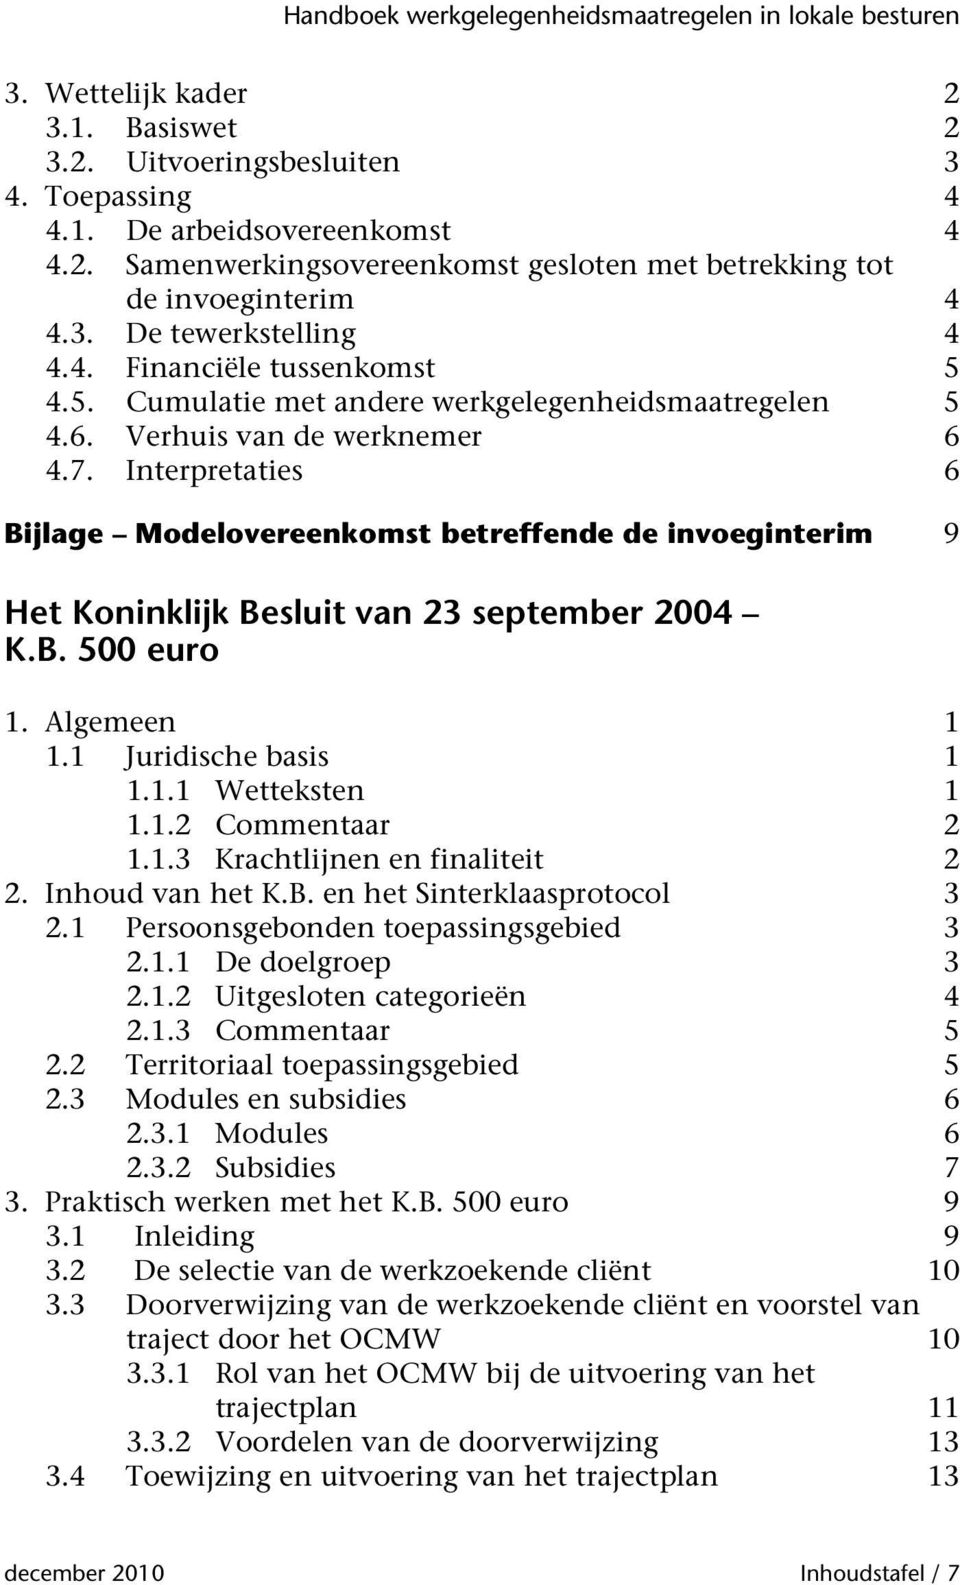 Interpretaties 6 Bijlage Modelovereenkomst betreffende de invoeginterim 9 Het Koninklijk Besluit van 23 september 2004 K.B. 500 euro 1. Algemeen 1 1.1 Juridische basis 1 1.1.1 Wetteksten 1 1.1.2 Commentaar 2 1.